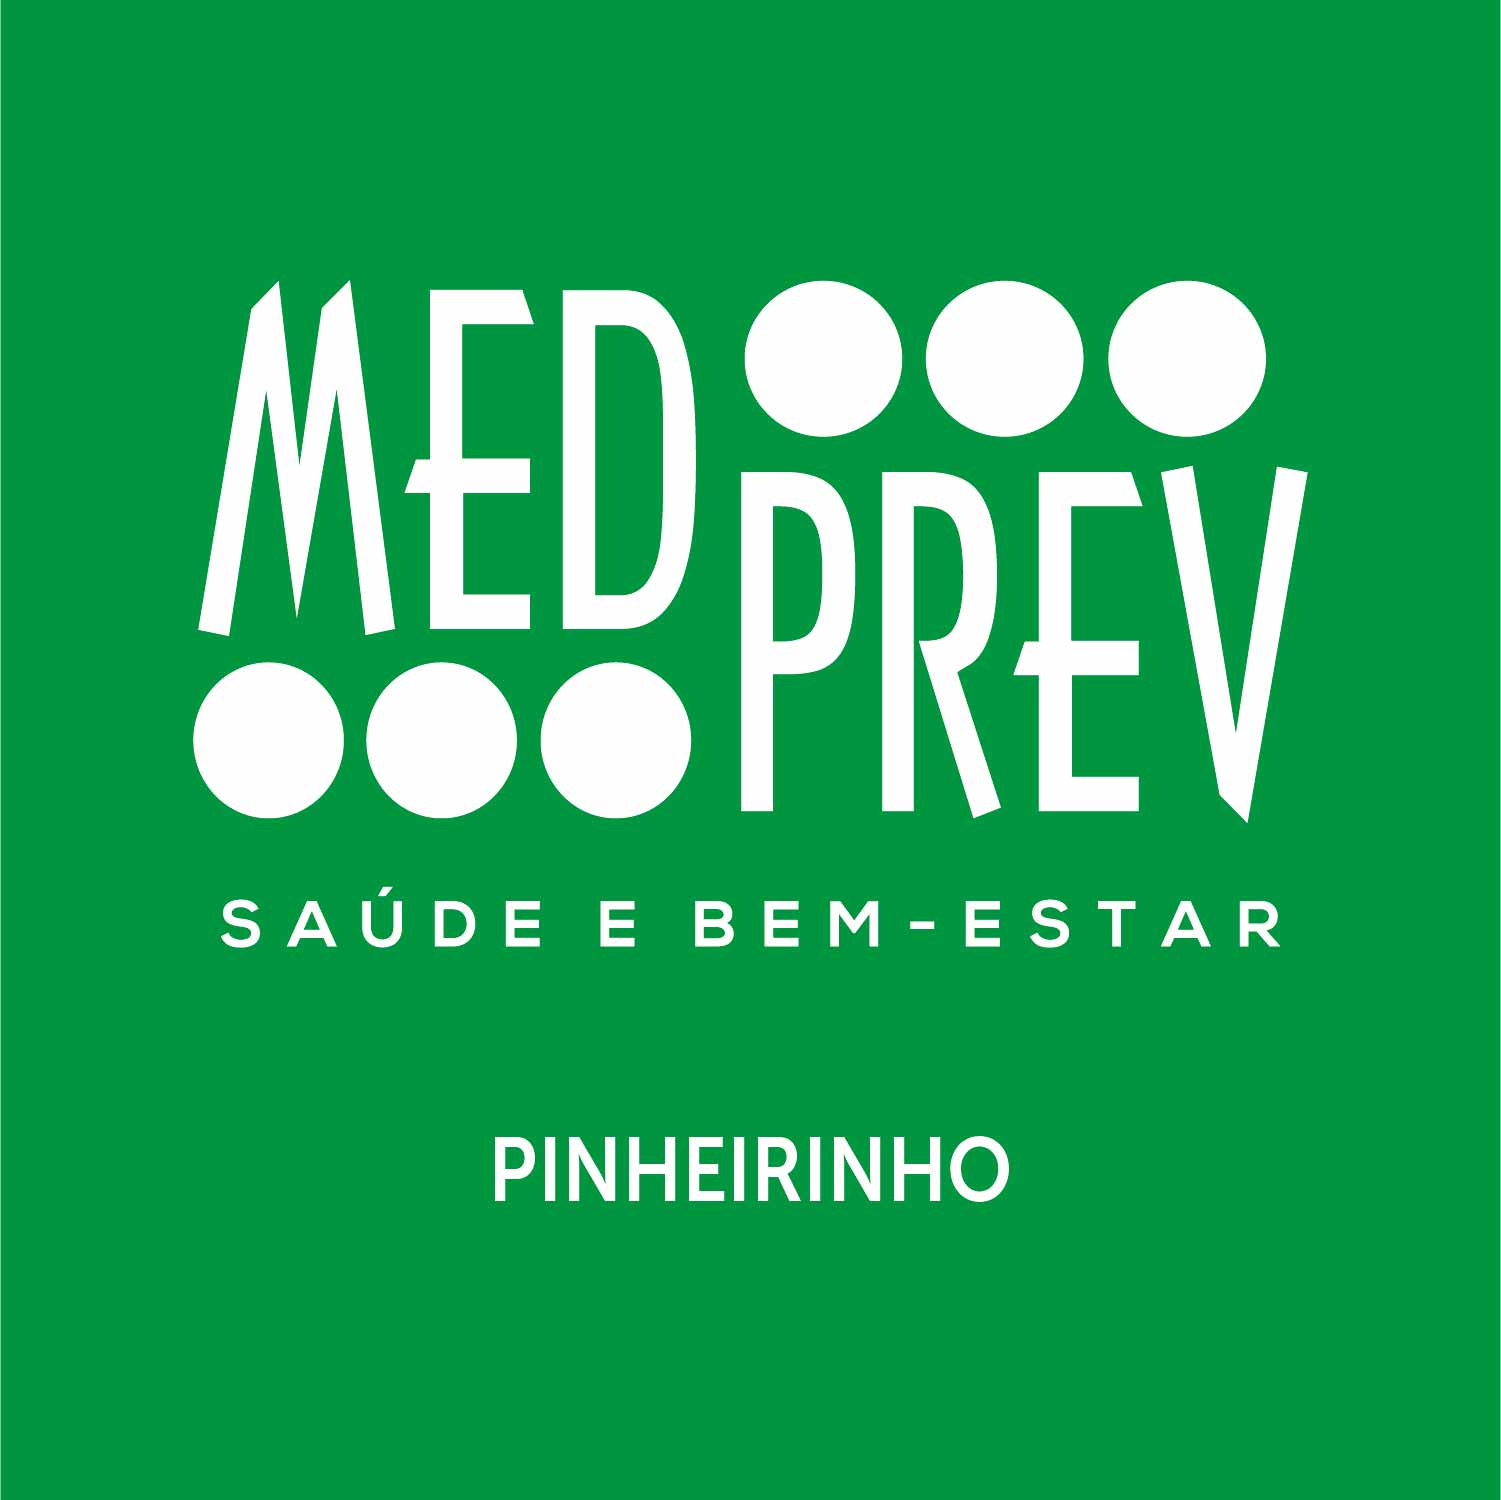 MED PREV PINHEIRINHO - Médicos - Medicina Preventiva - Curitiba, PR